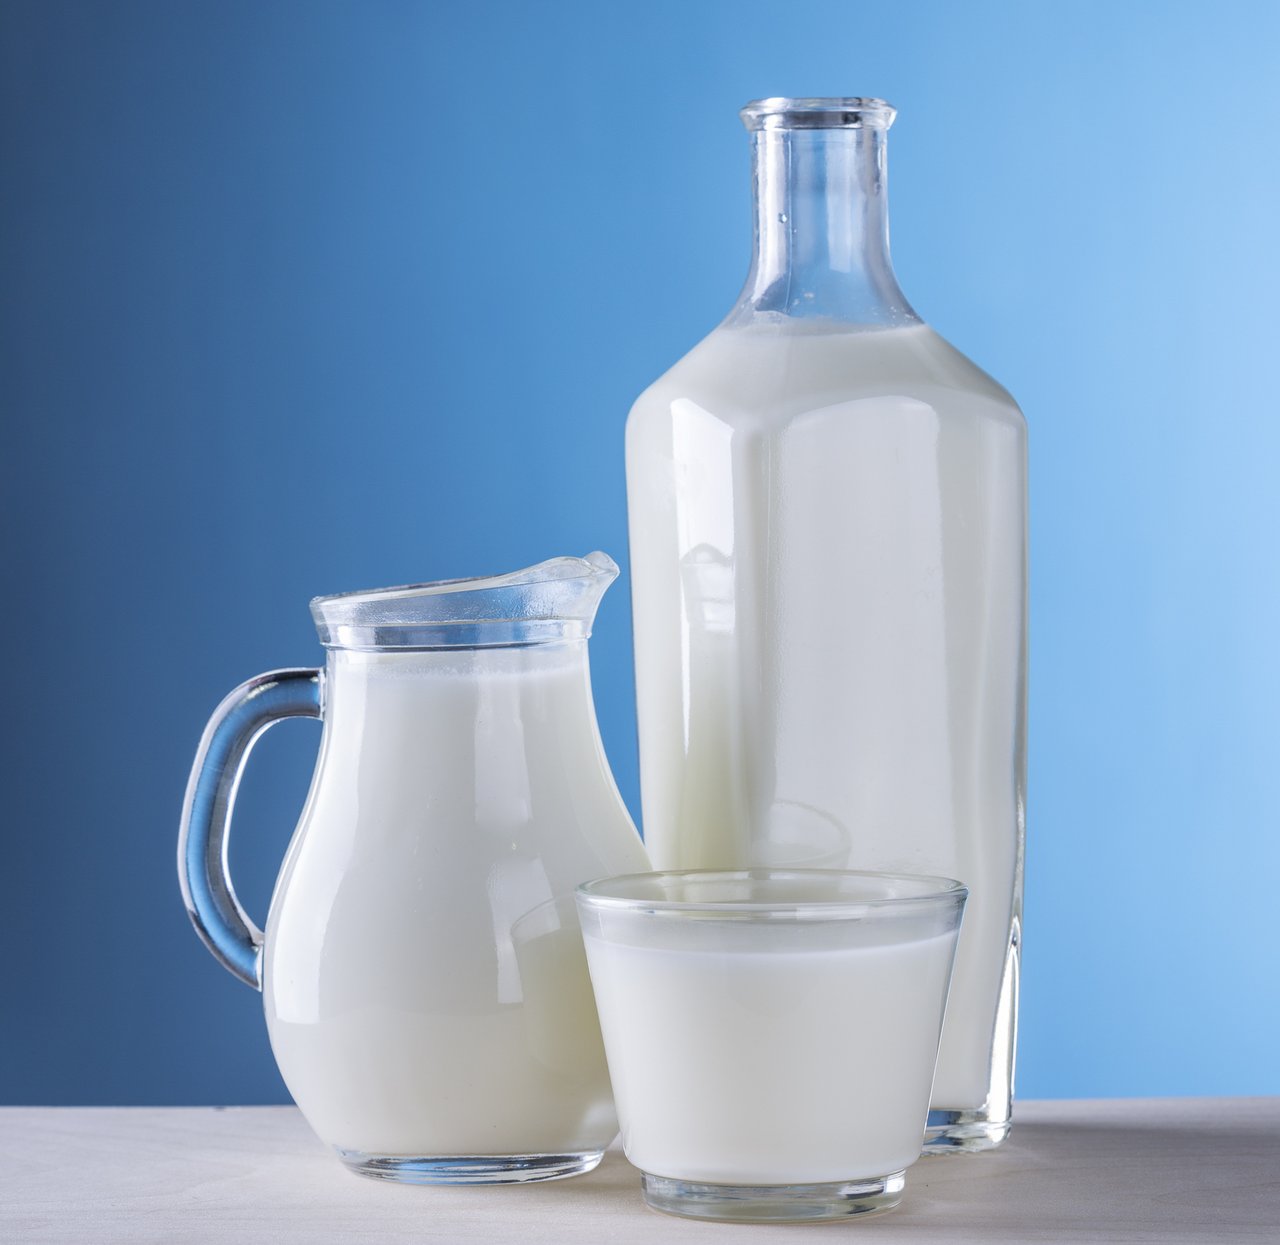 Die Konsumenten-Preise für Milch haben sich stabilisiert. (Bild pd)